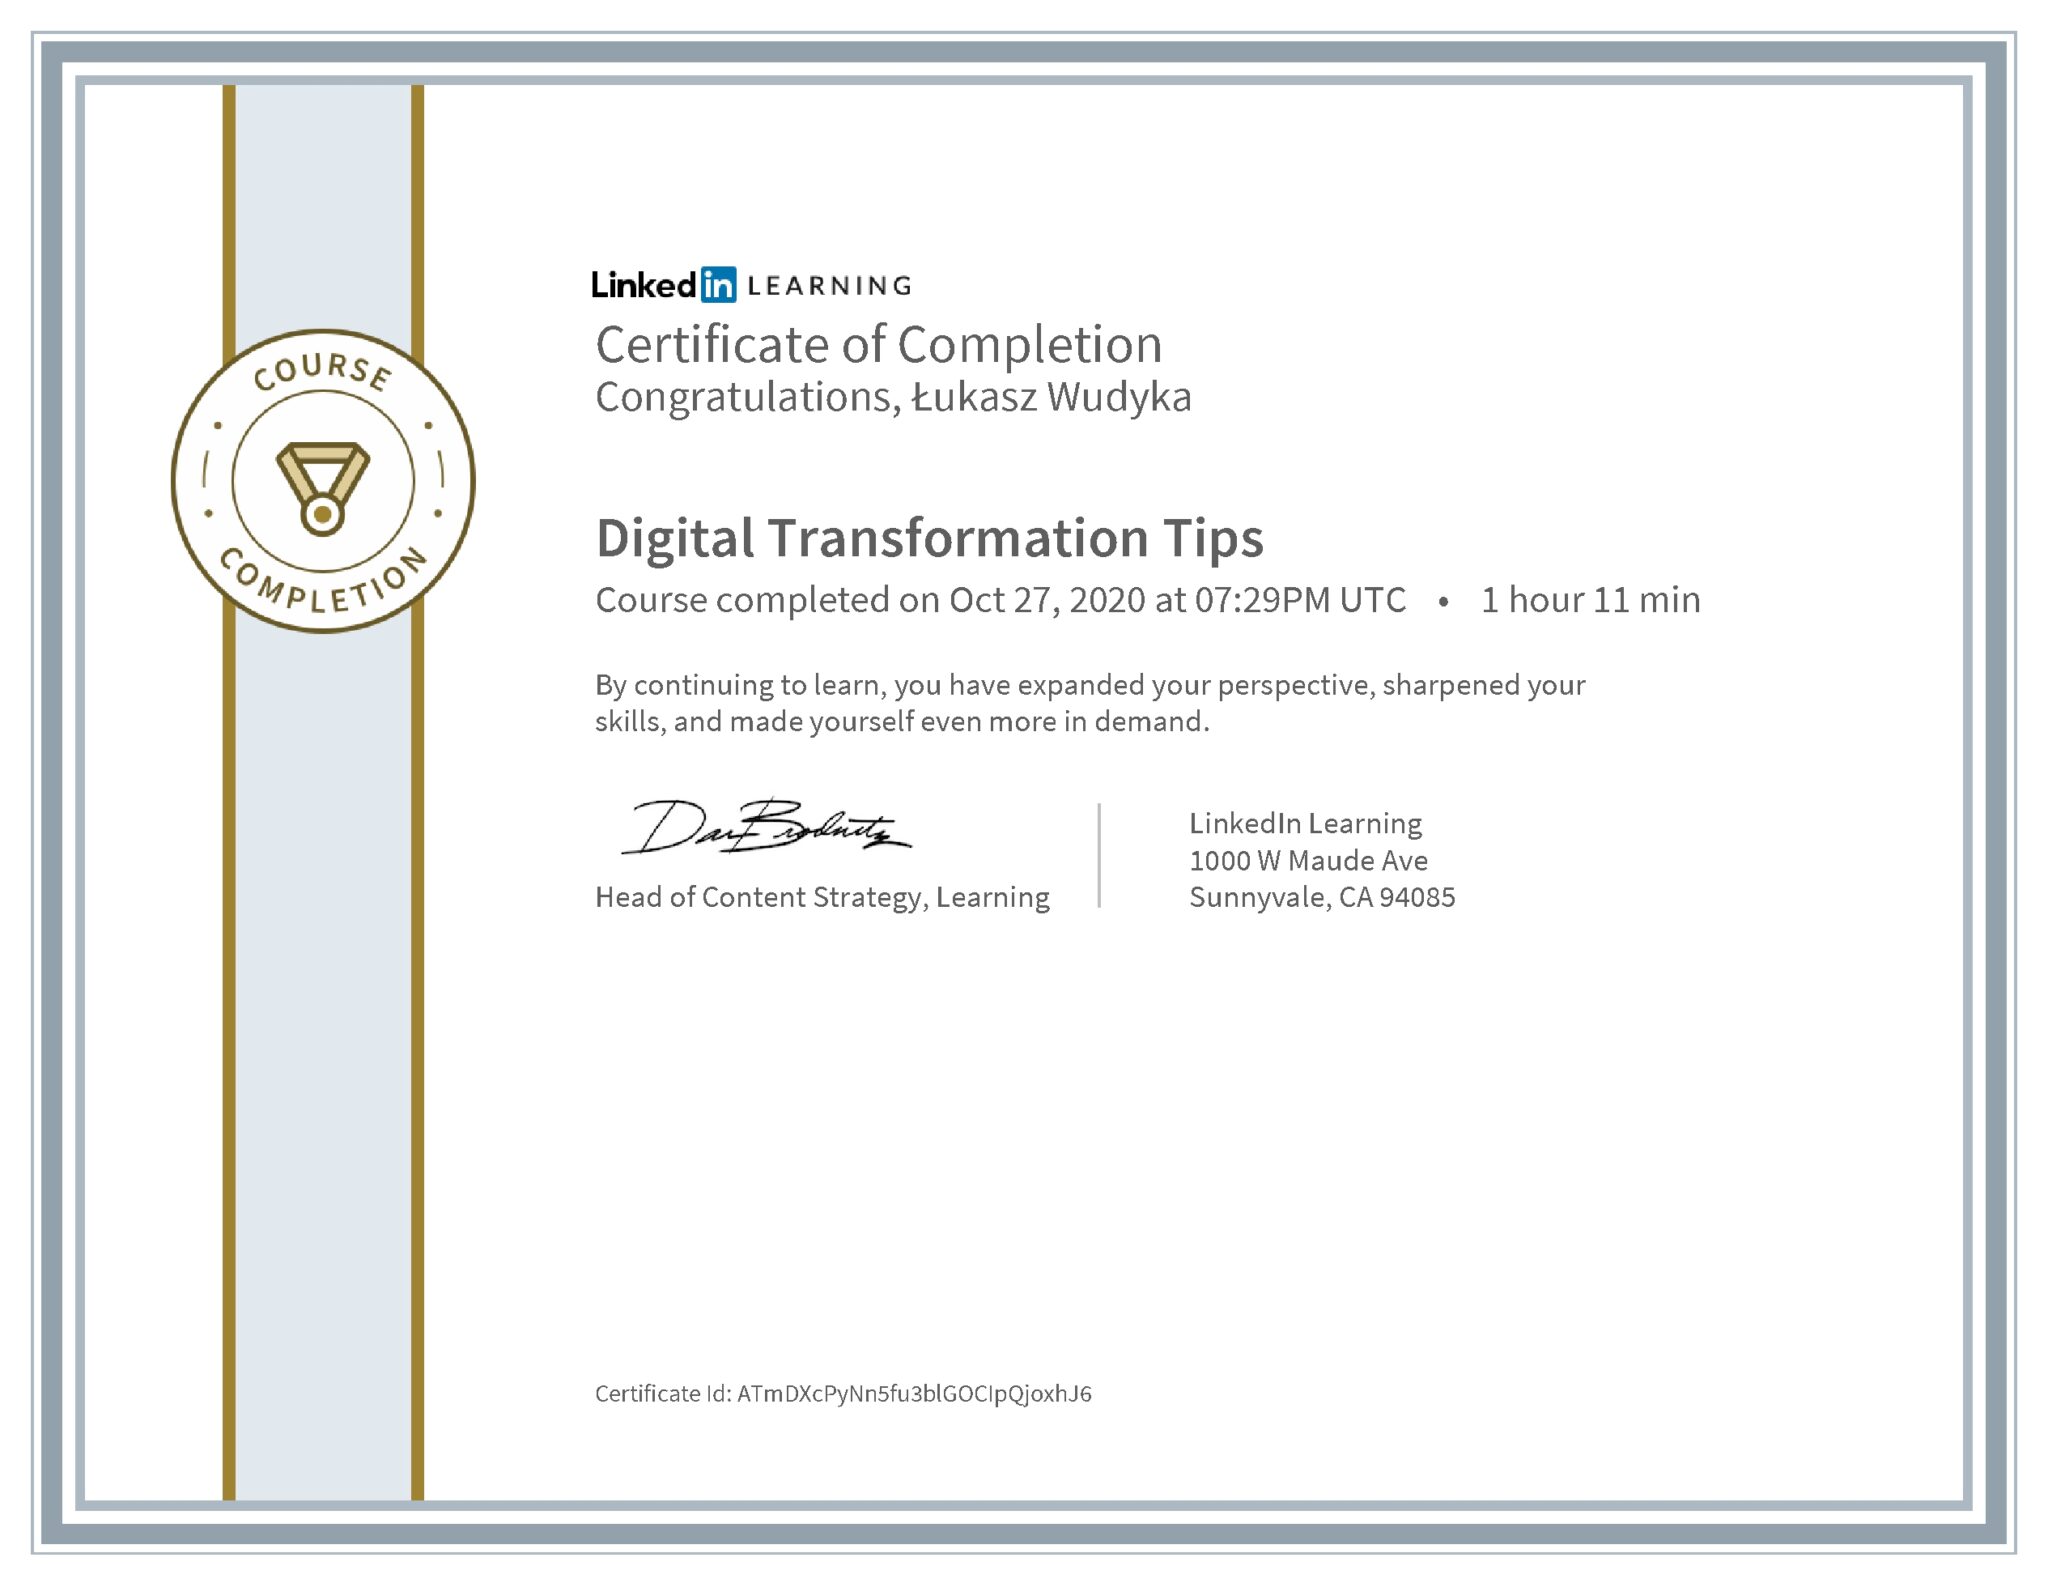 Łukasz Wudyka certyfikat LinkedIn Digital Transformation Tips